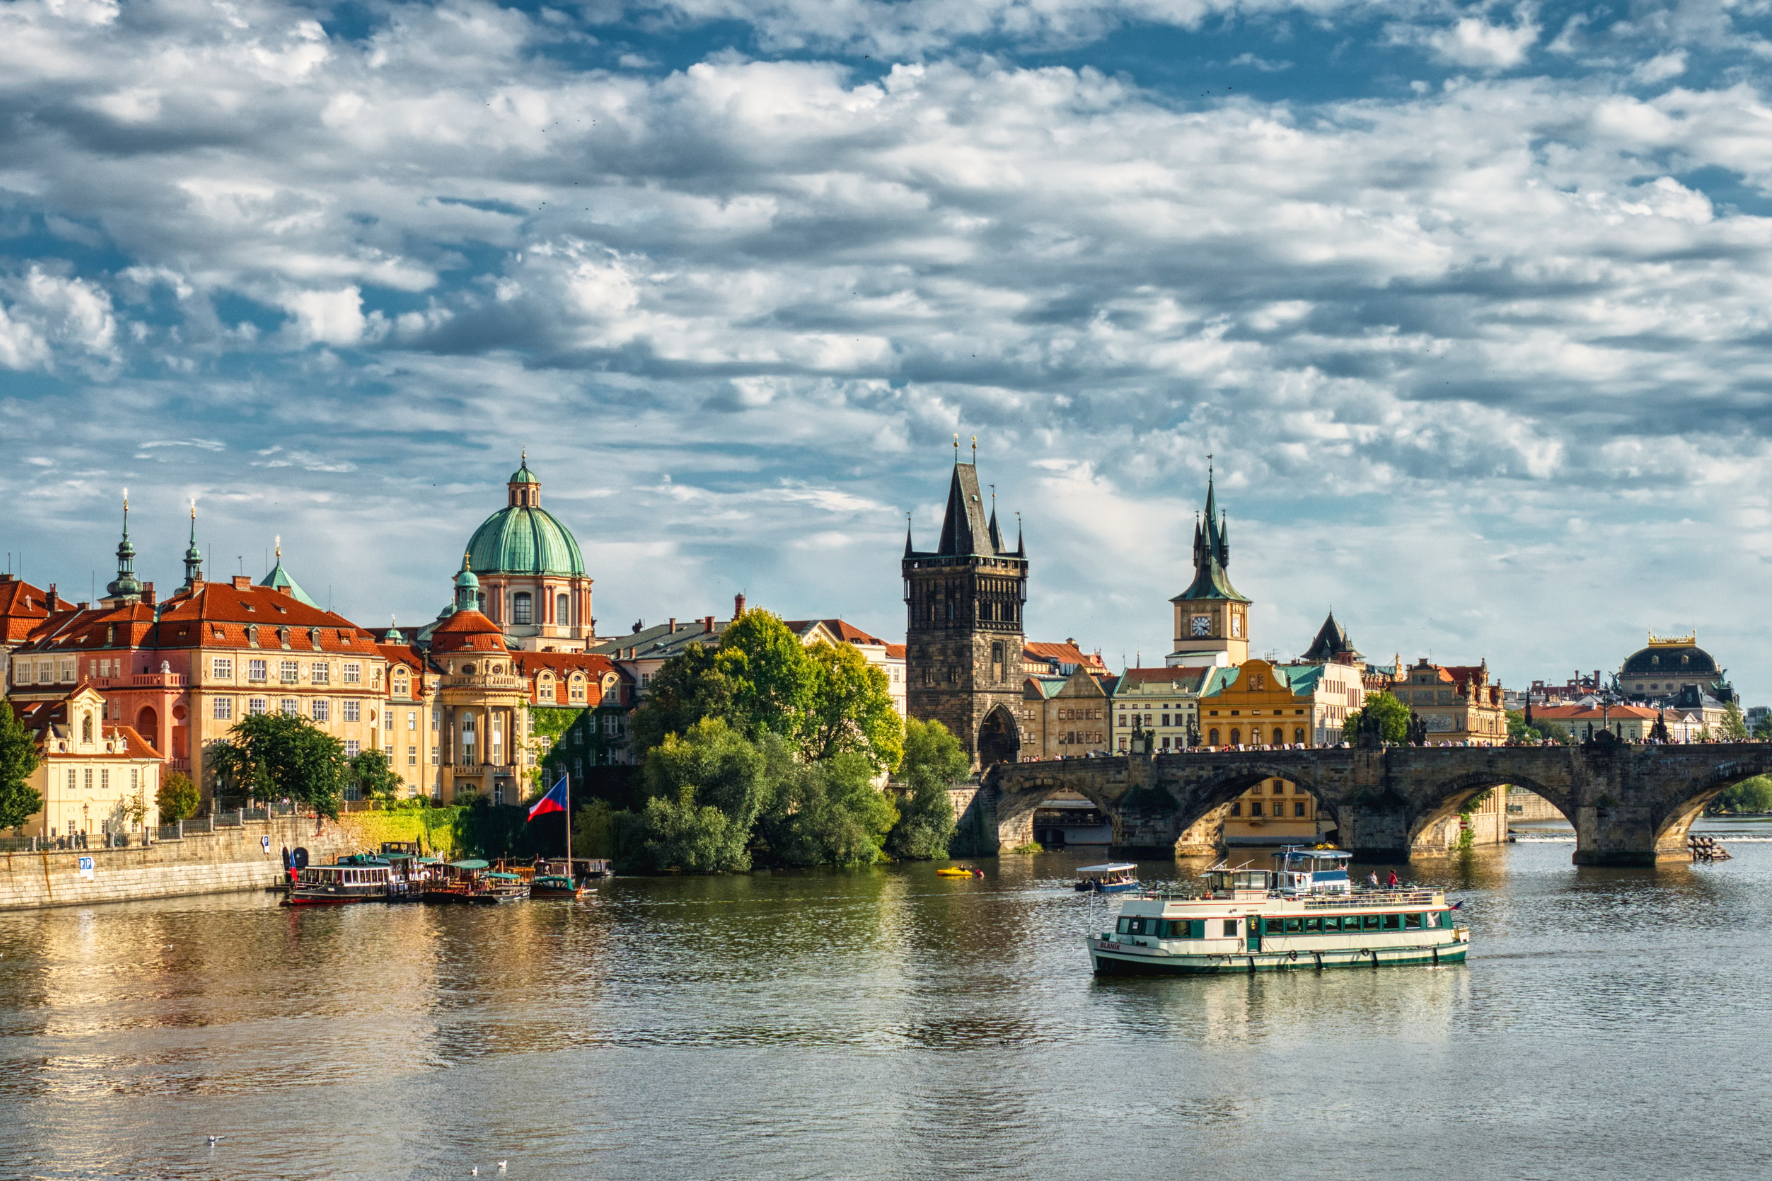 Proč investovat do bytů právě v Praze